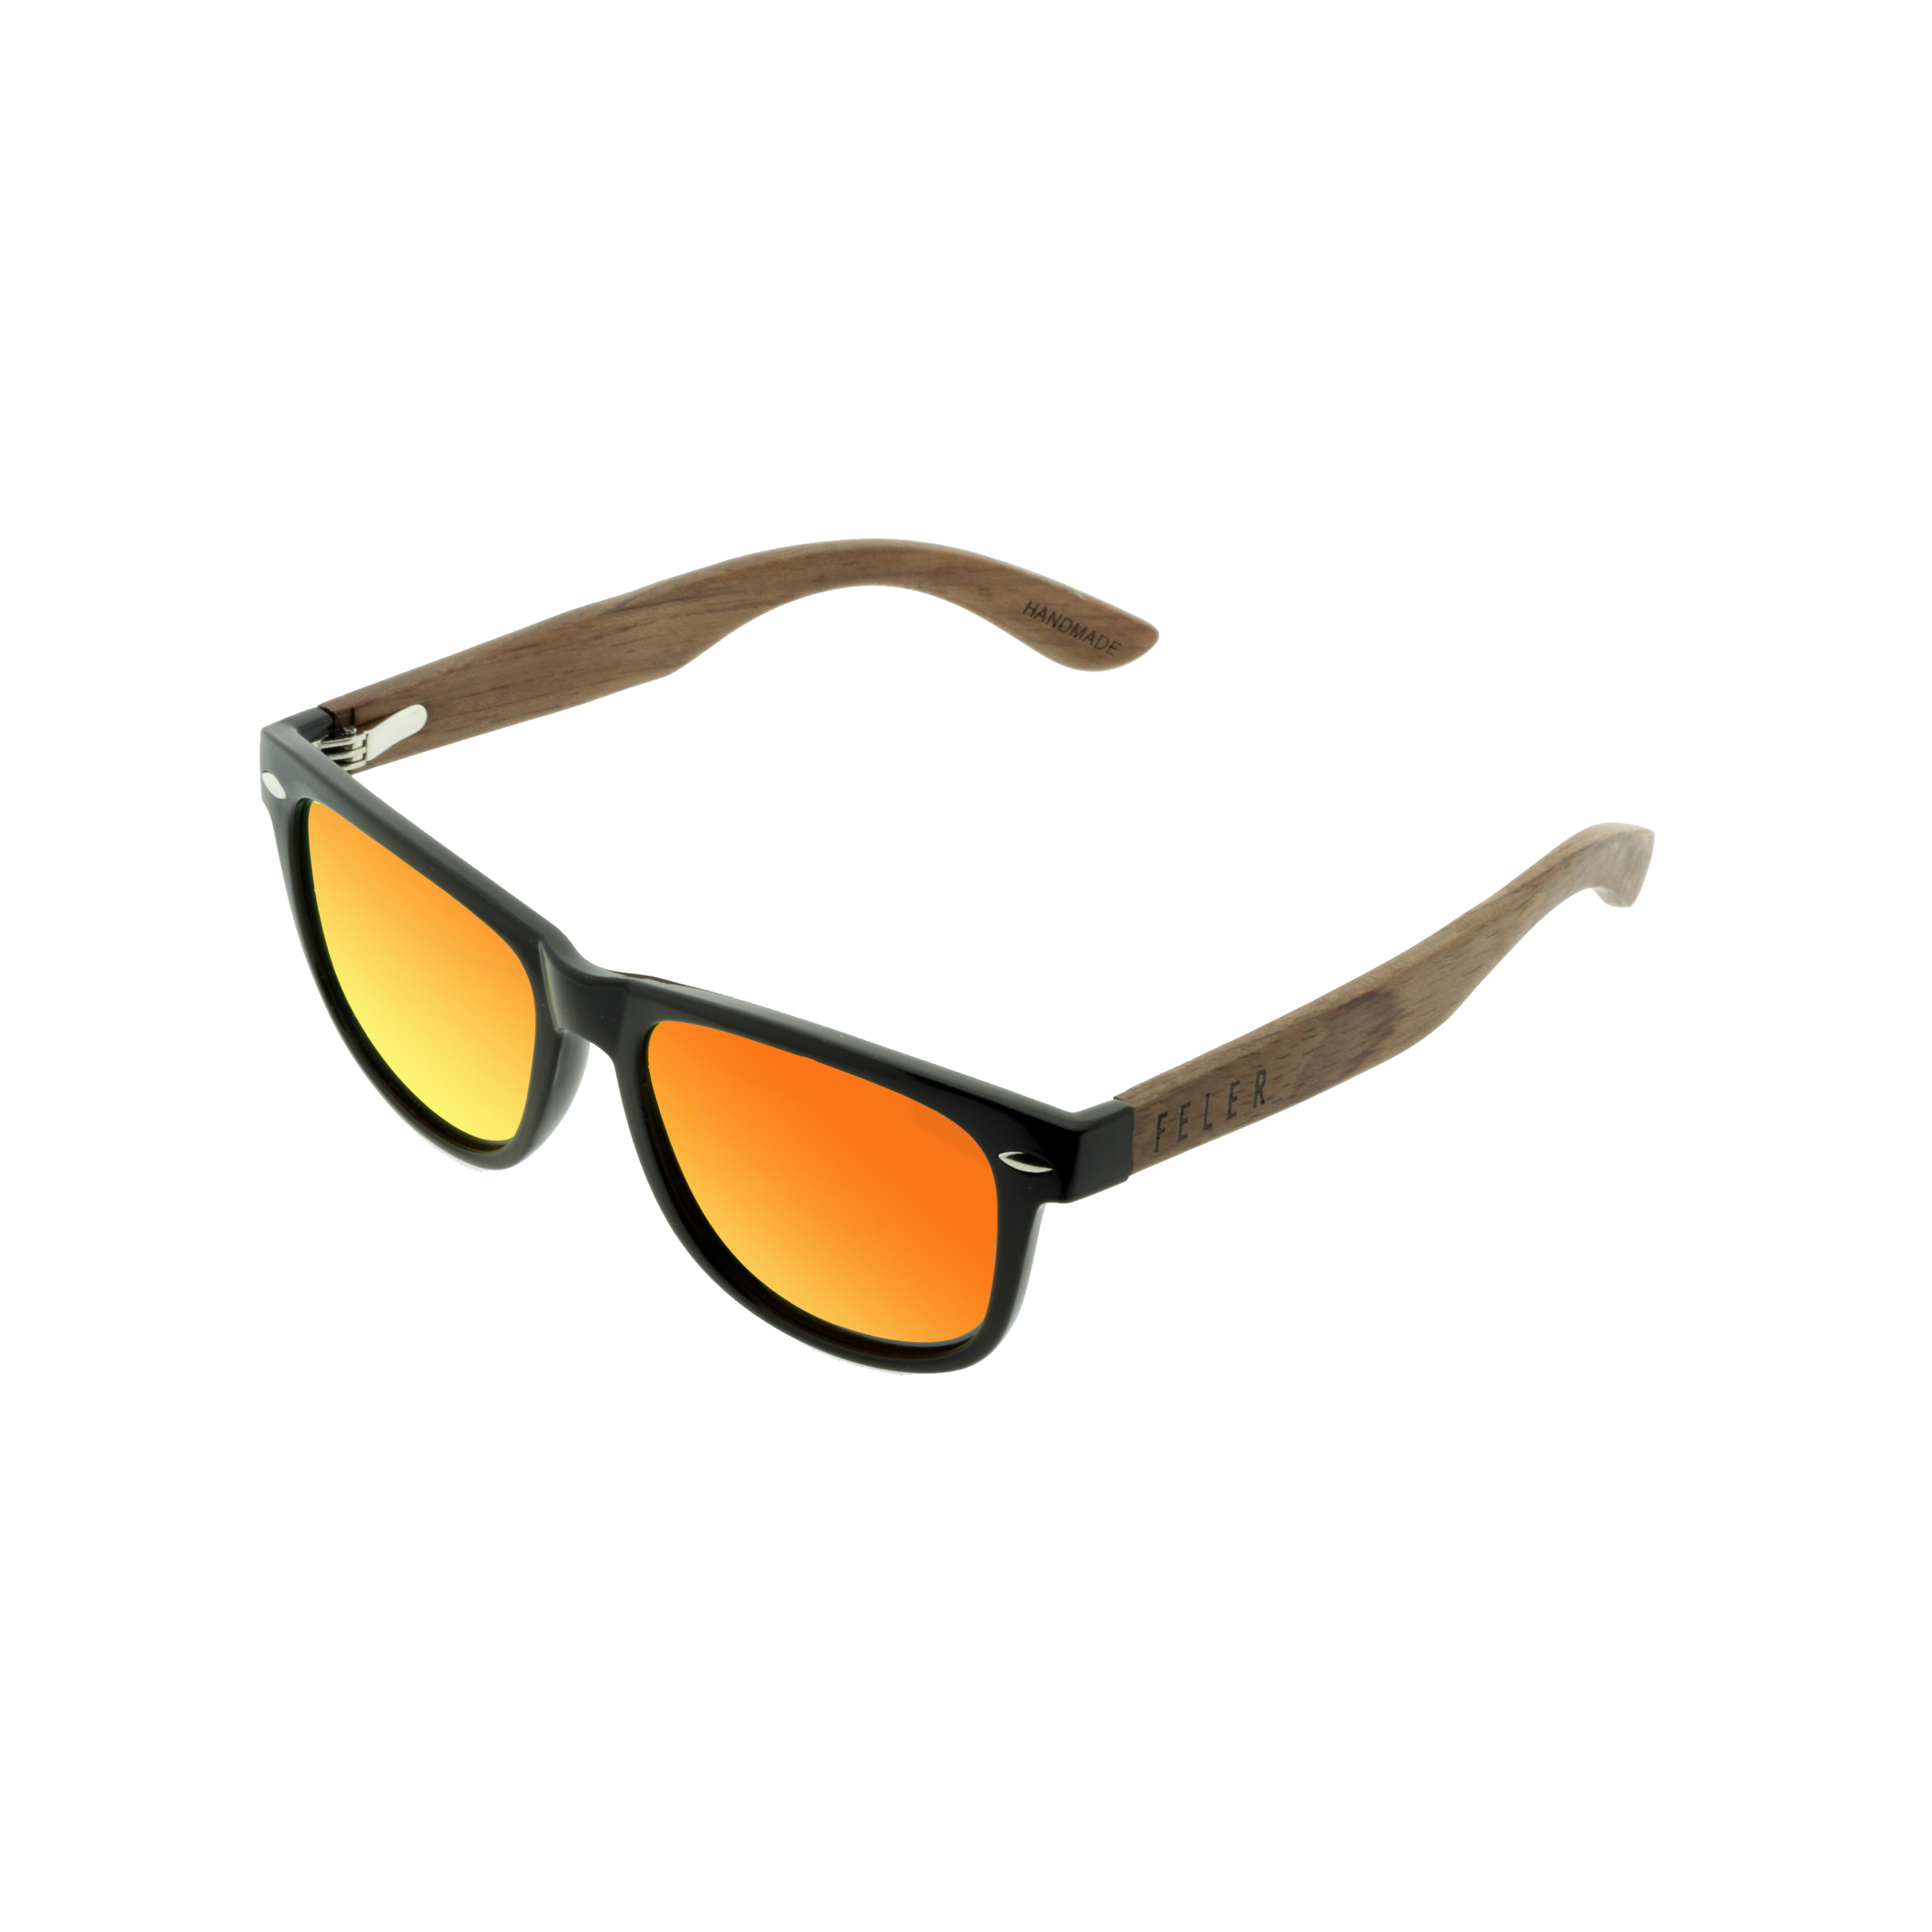 Óculos De Sol Feler Regular Hibrid - naranja - 